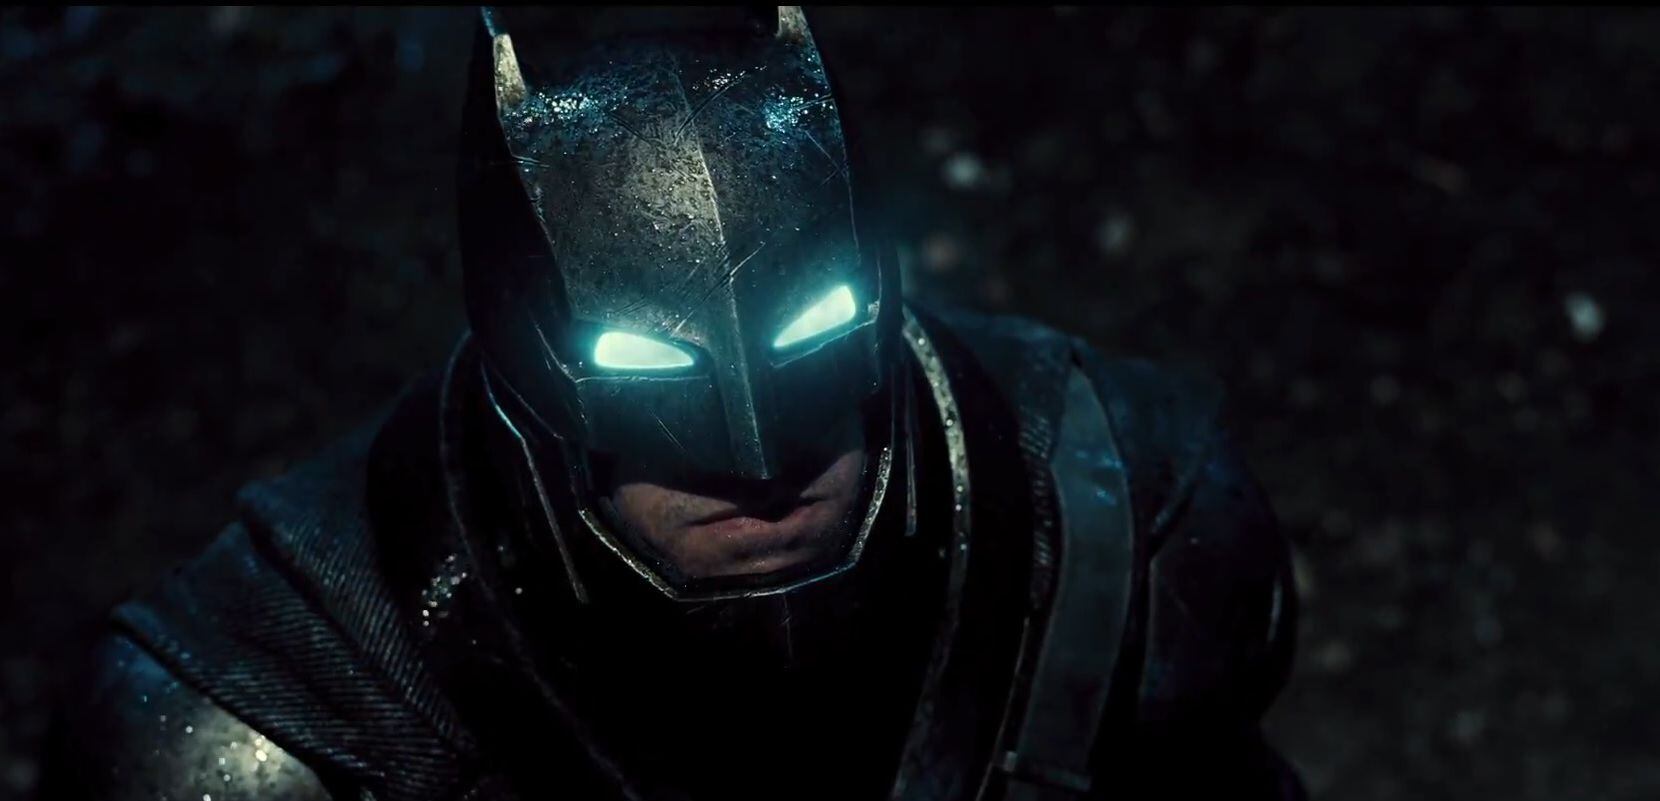 Batman v. Superman' trailer released following online leak